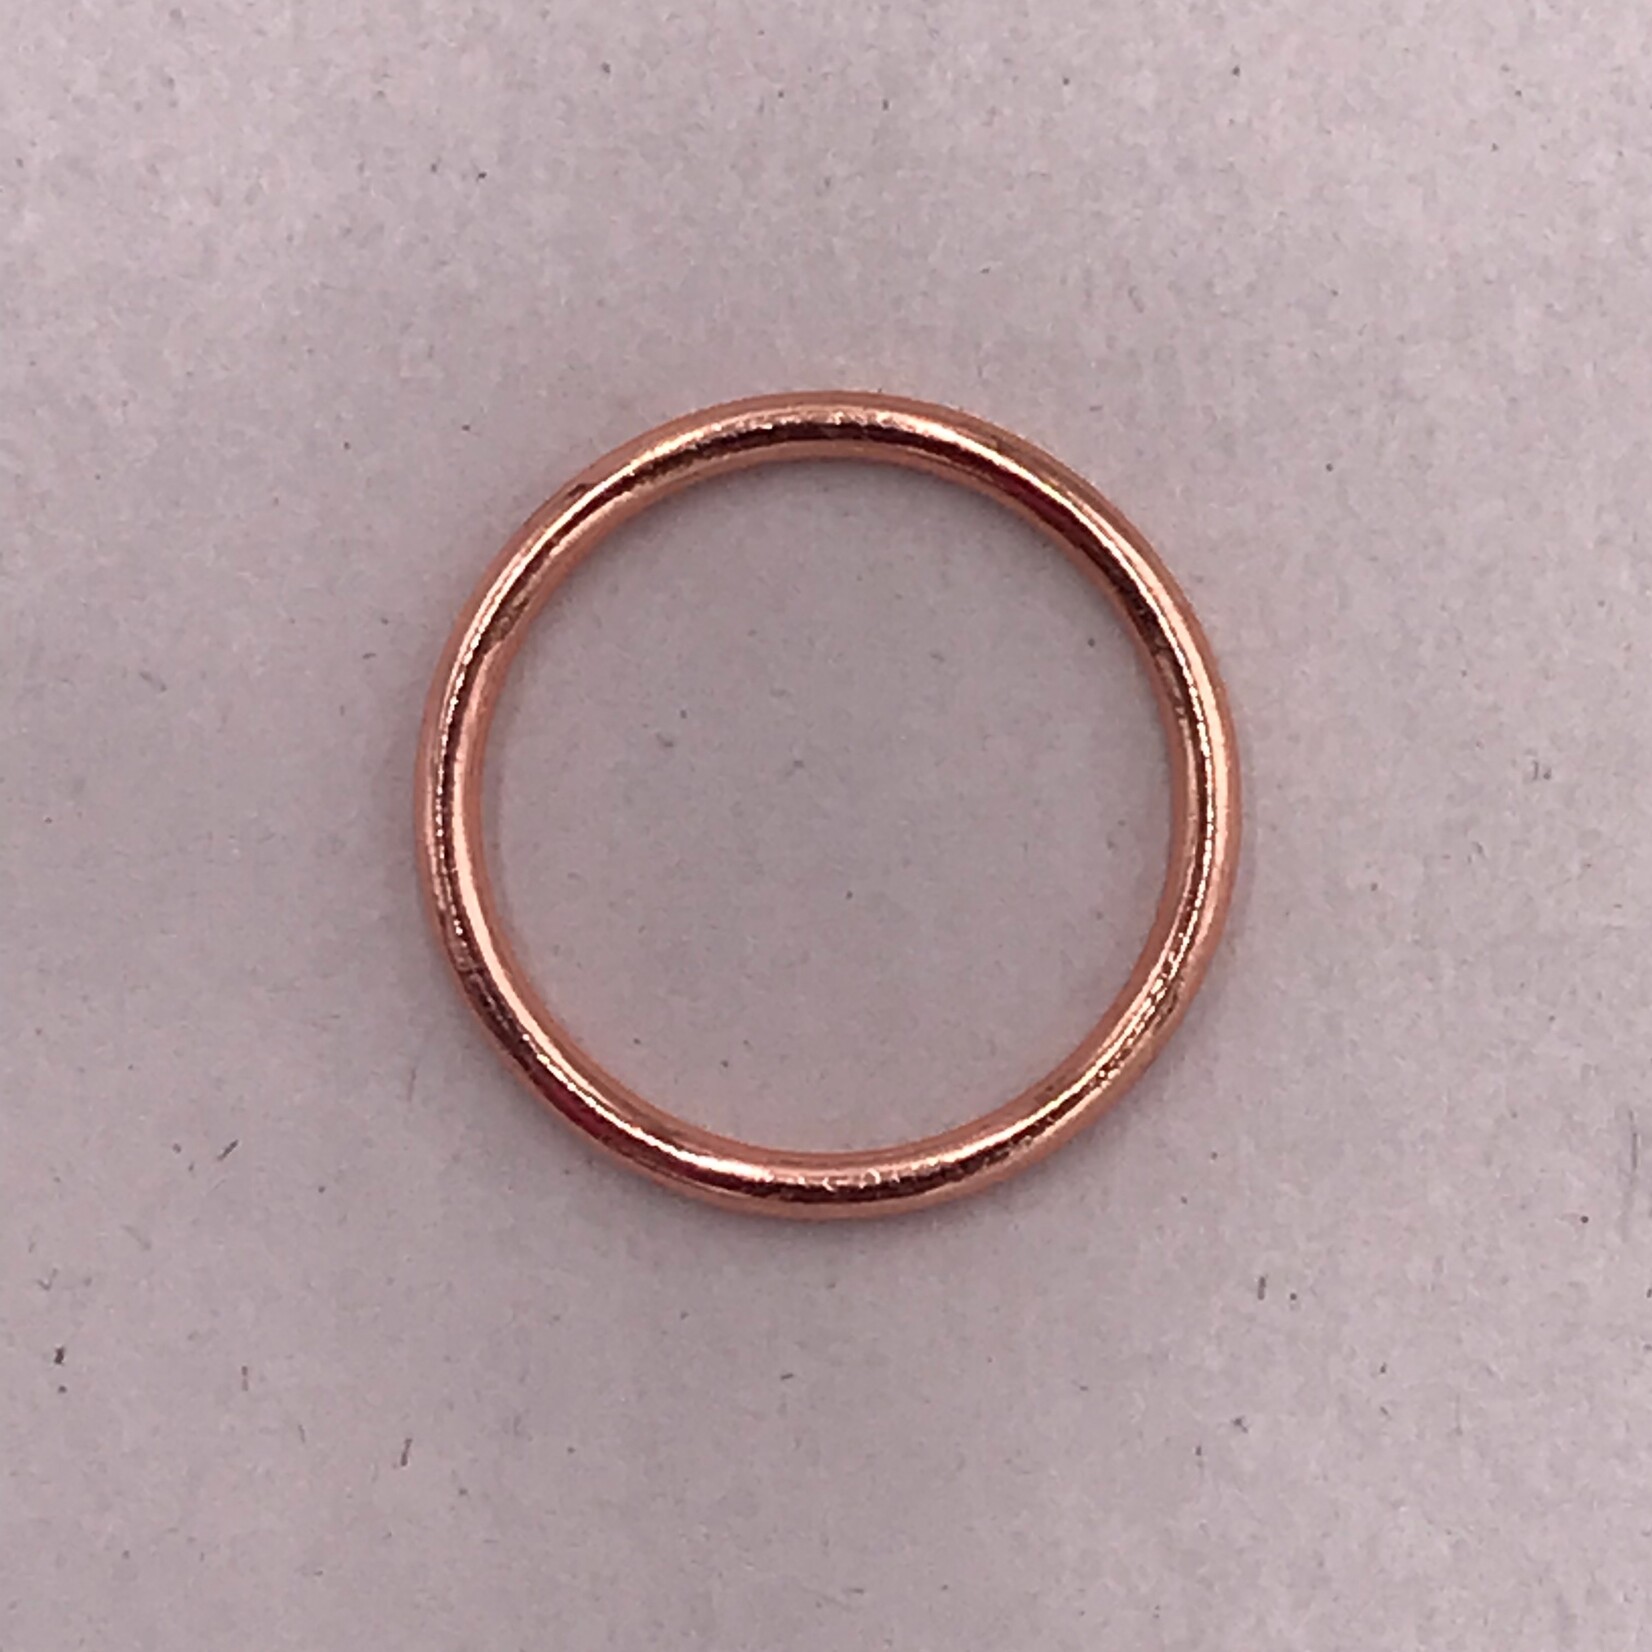 BRA O-RINGS (16MM) 5/8 INCH (100PCS/PACK) - ROSE GOLD